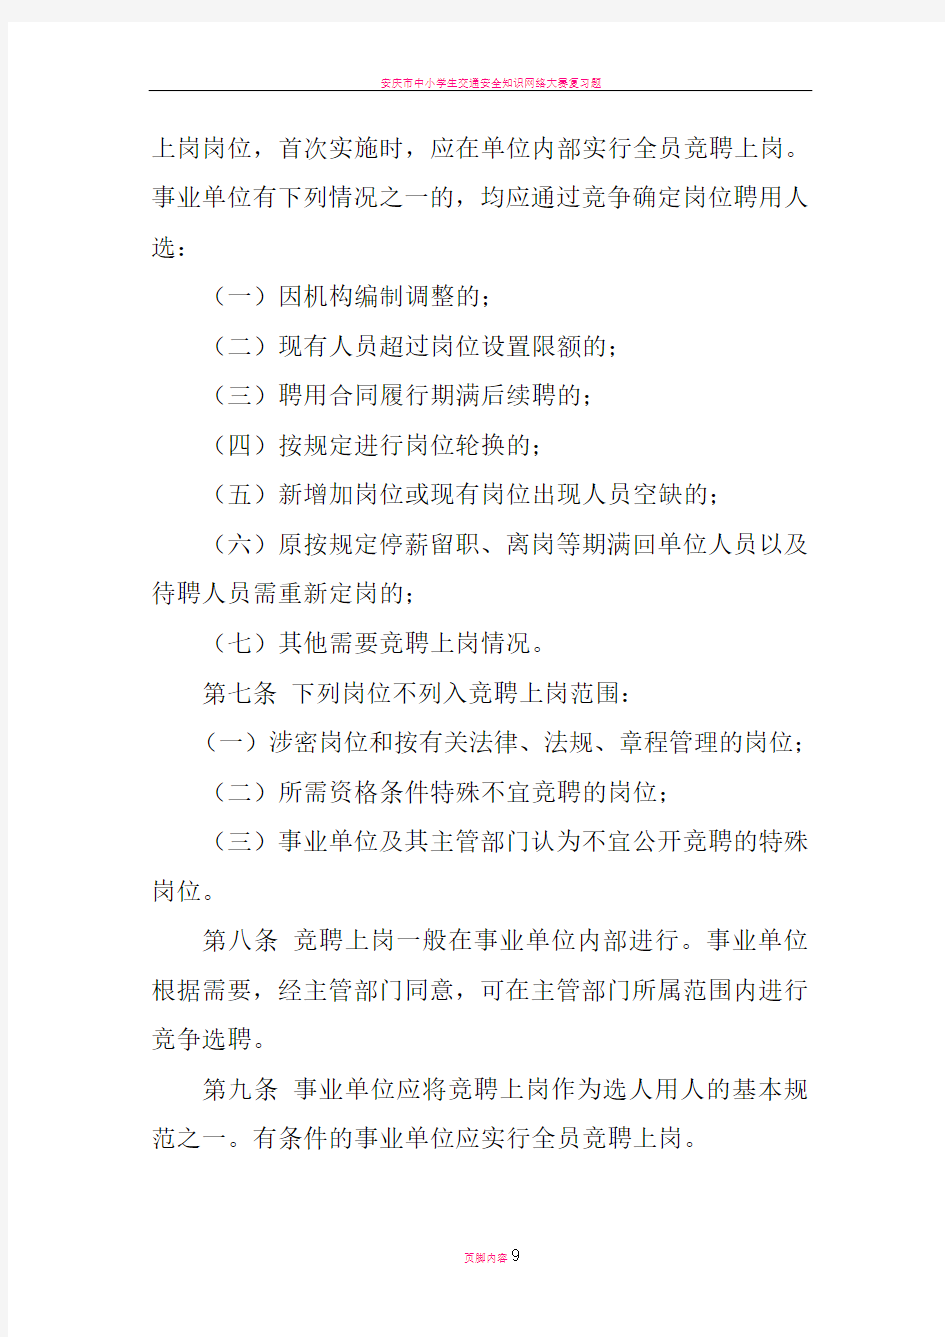 安庆市事业单位竞聘上岗暂行办法